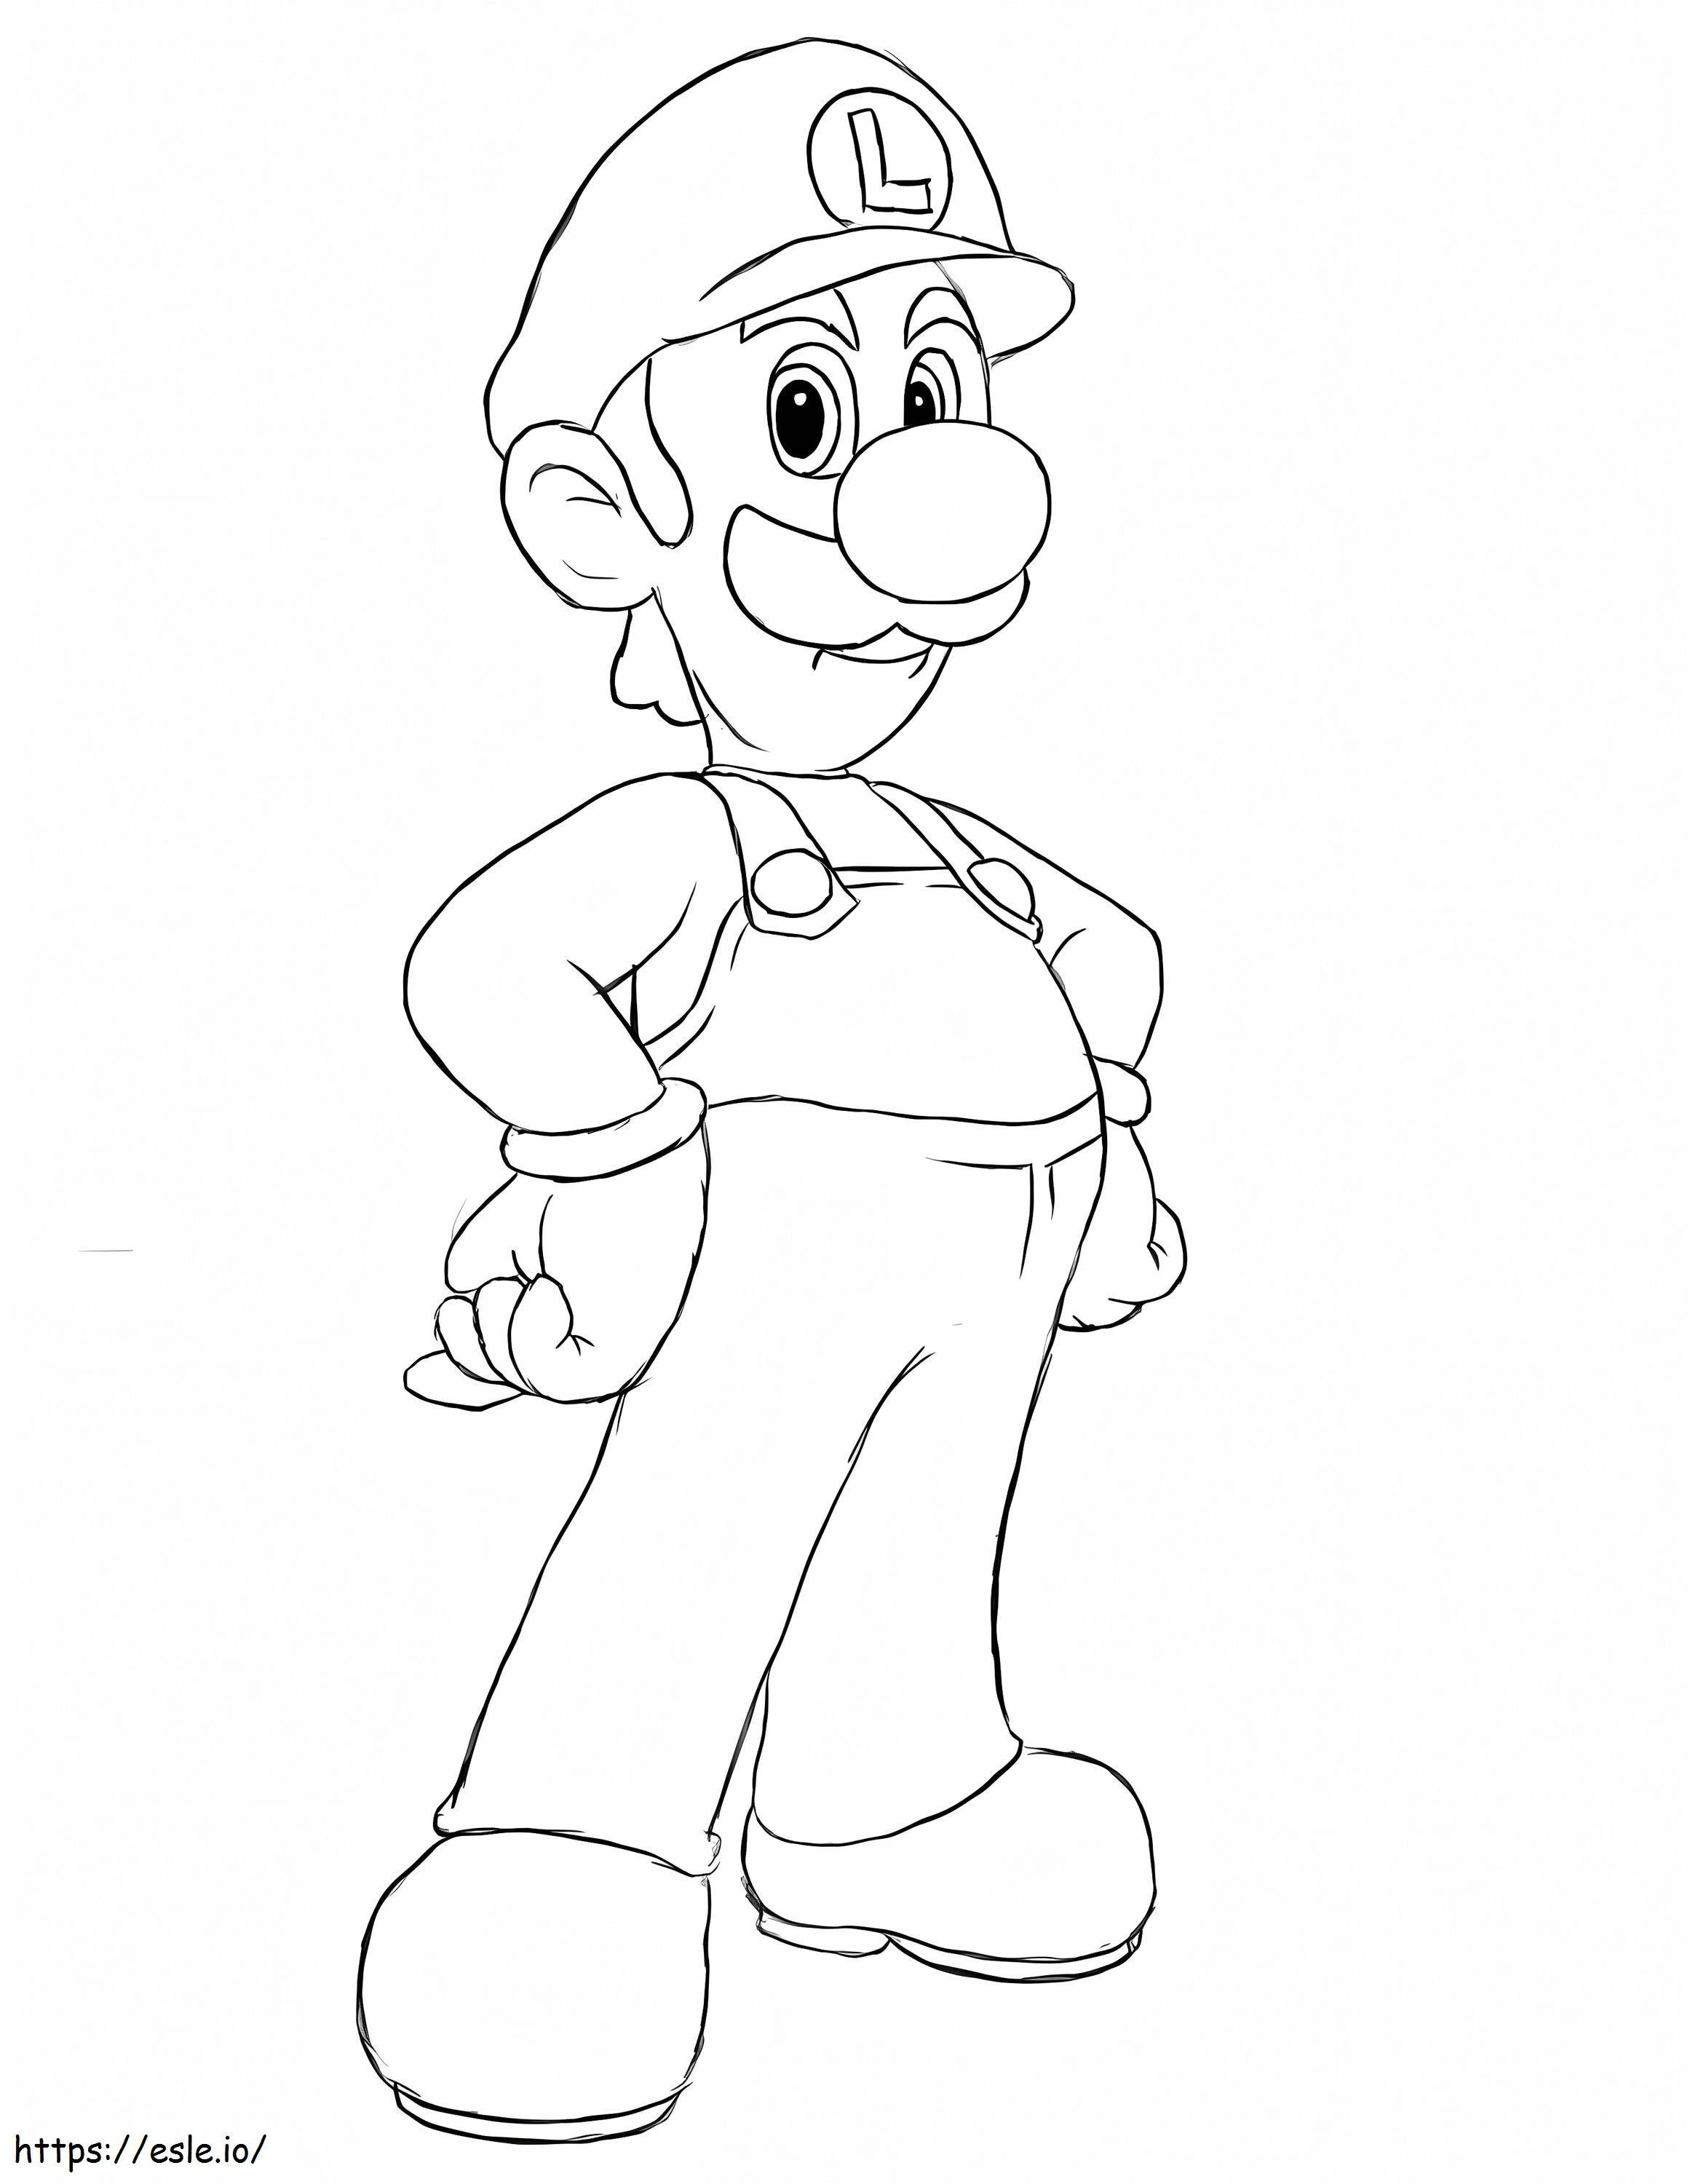 Louis De Super Mario 4 coloring page